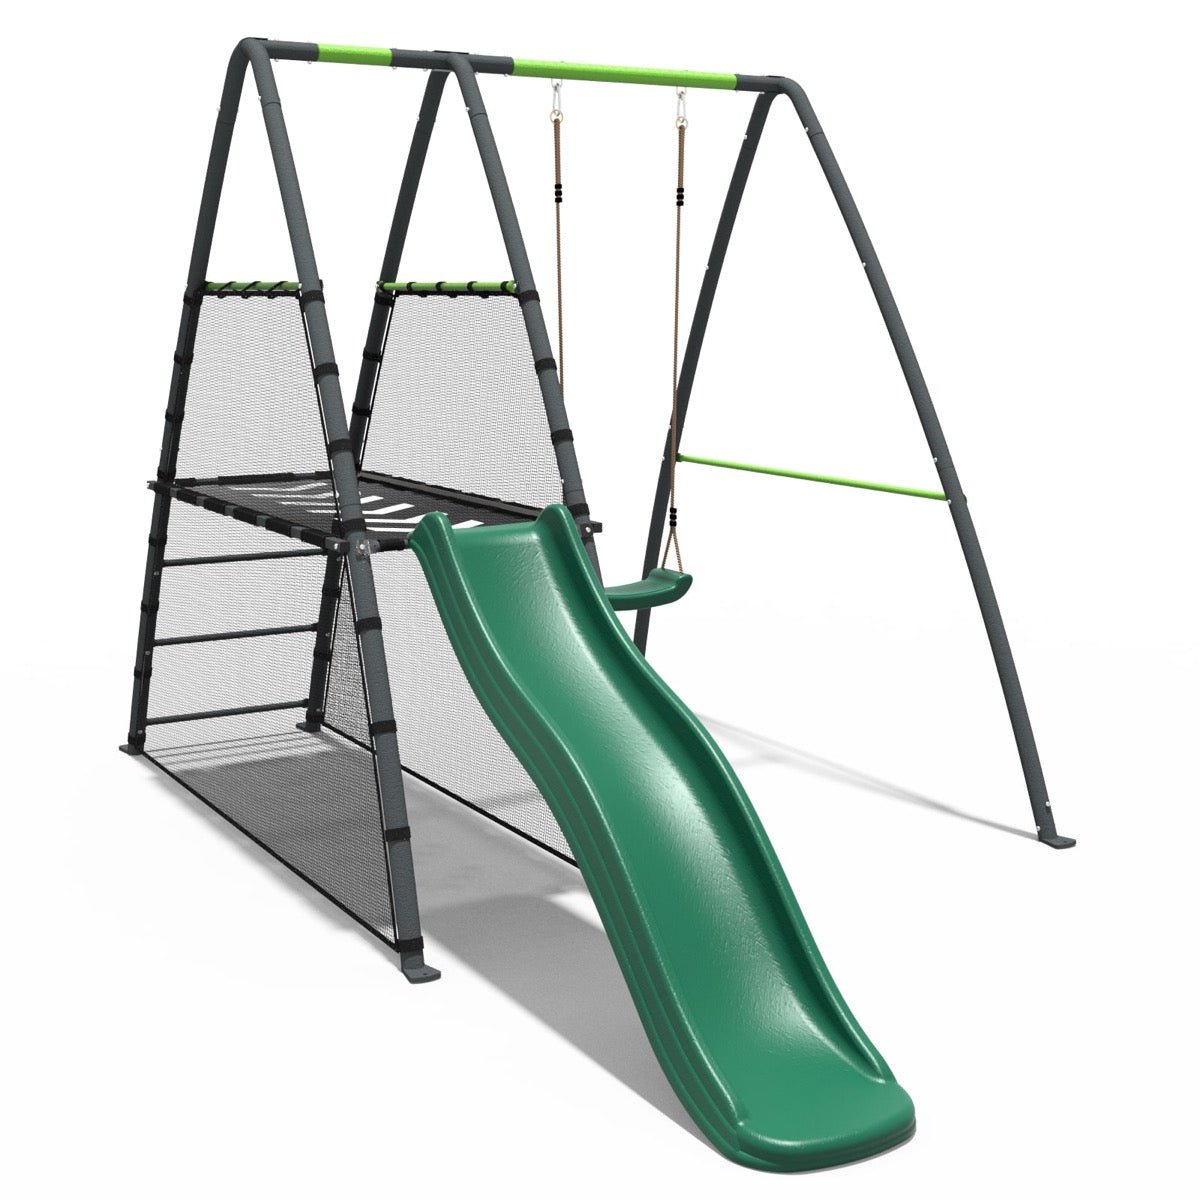 Rebo Steel Series Metal Swing Set with Slide Platform & 6ft Slide - Single Green